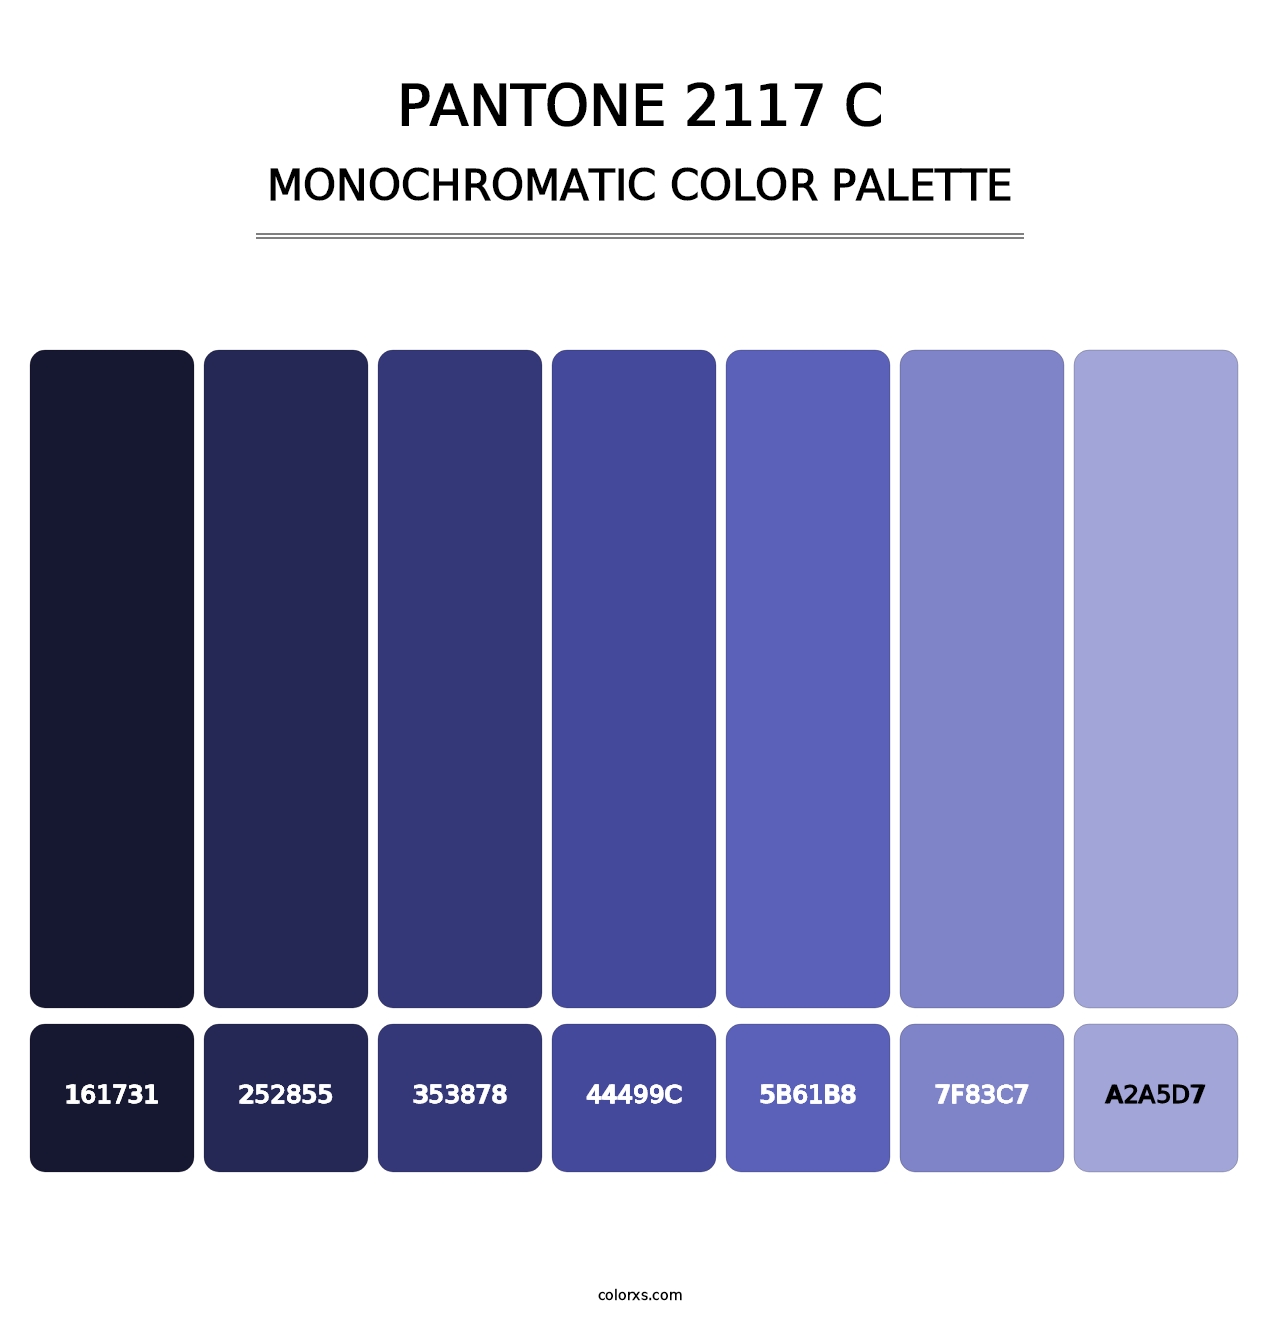 PANTONE 2117 C - Monochromatic Color Palette